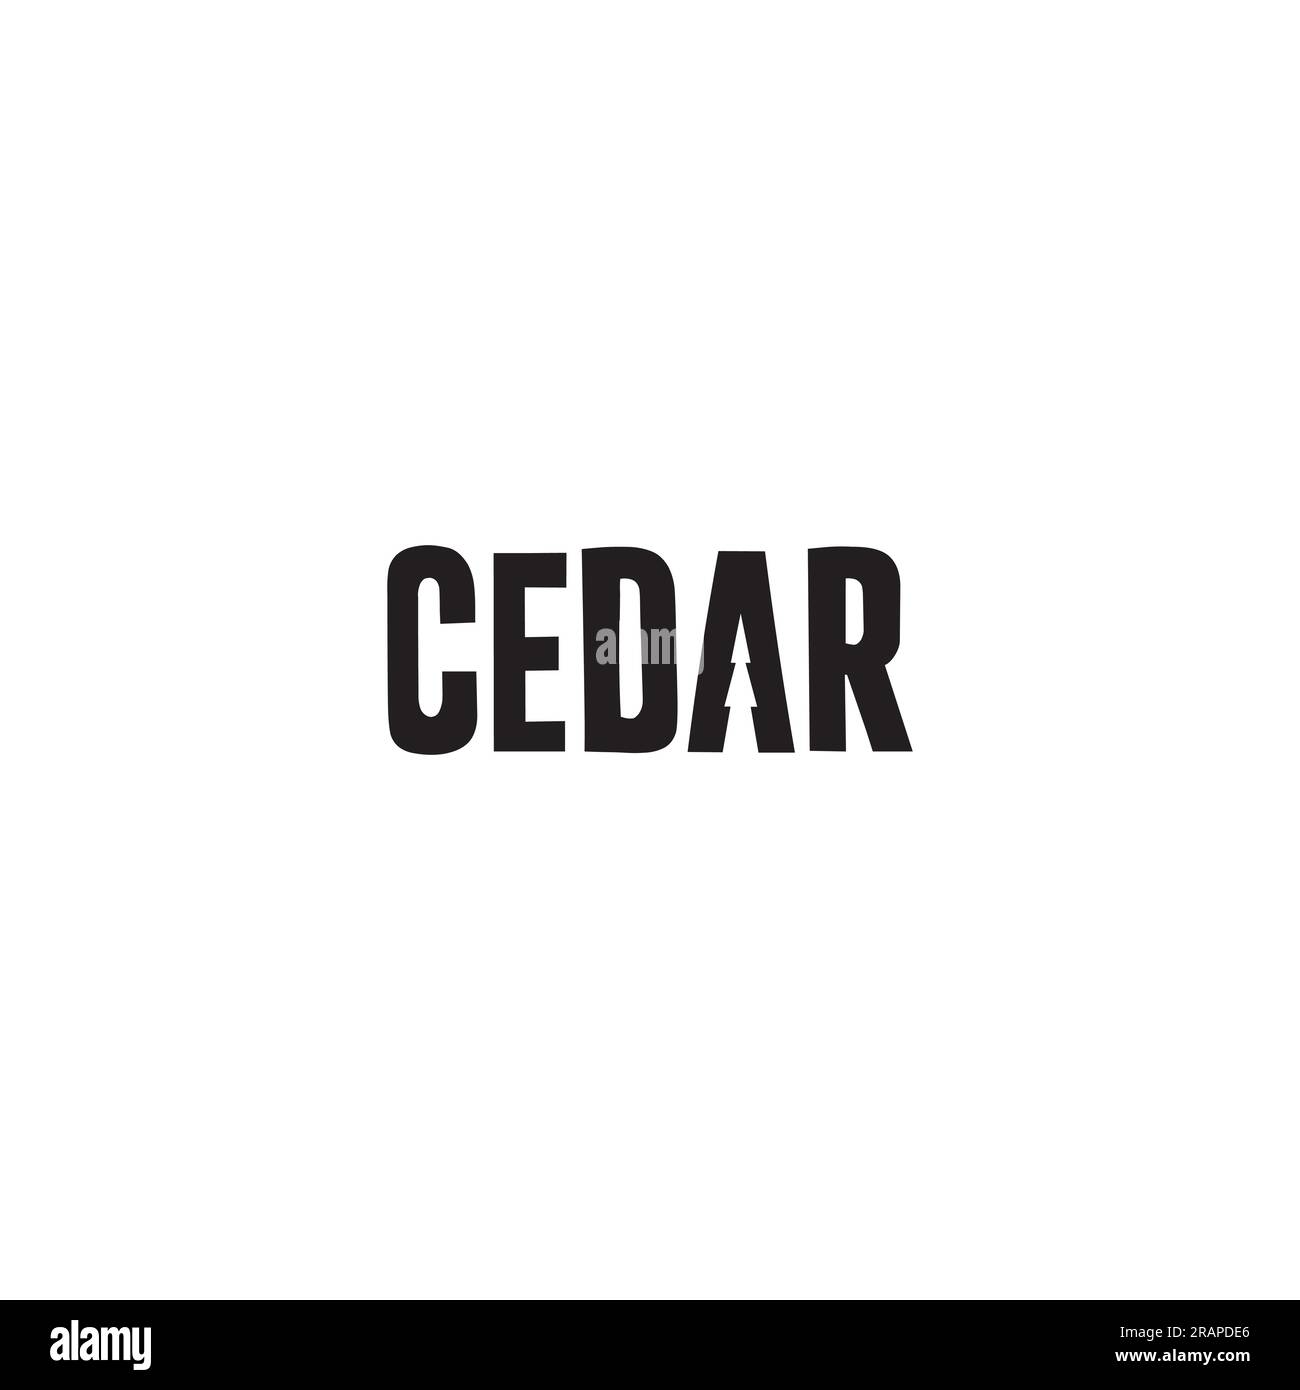 Cedar logo or wordmark design Stock Vector Image & Art - Alamy